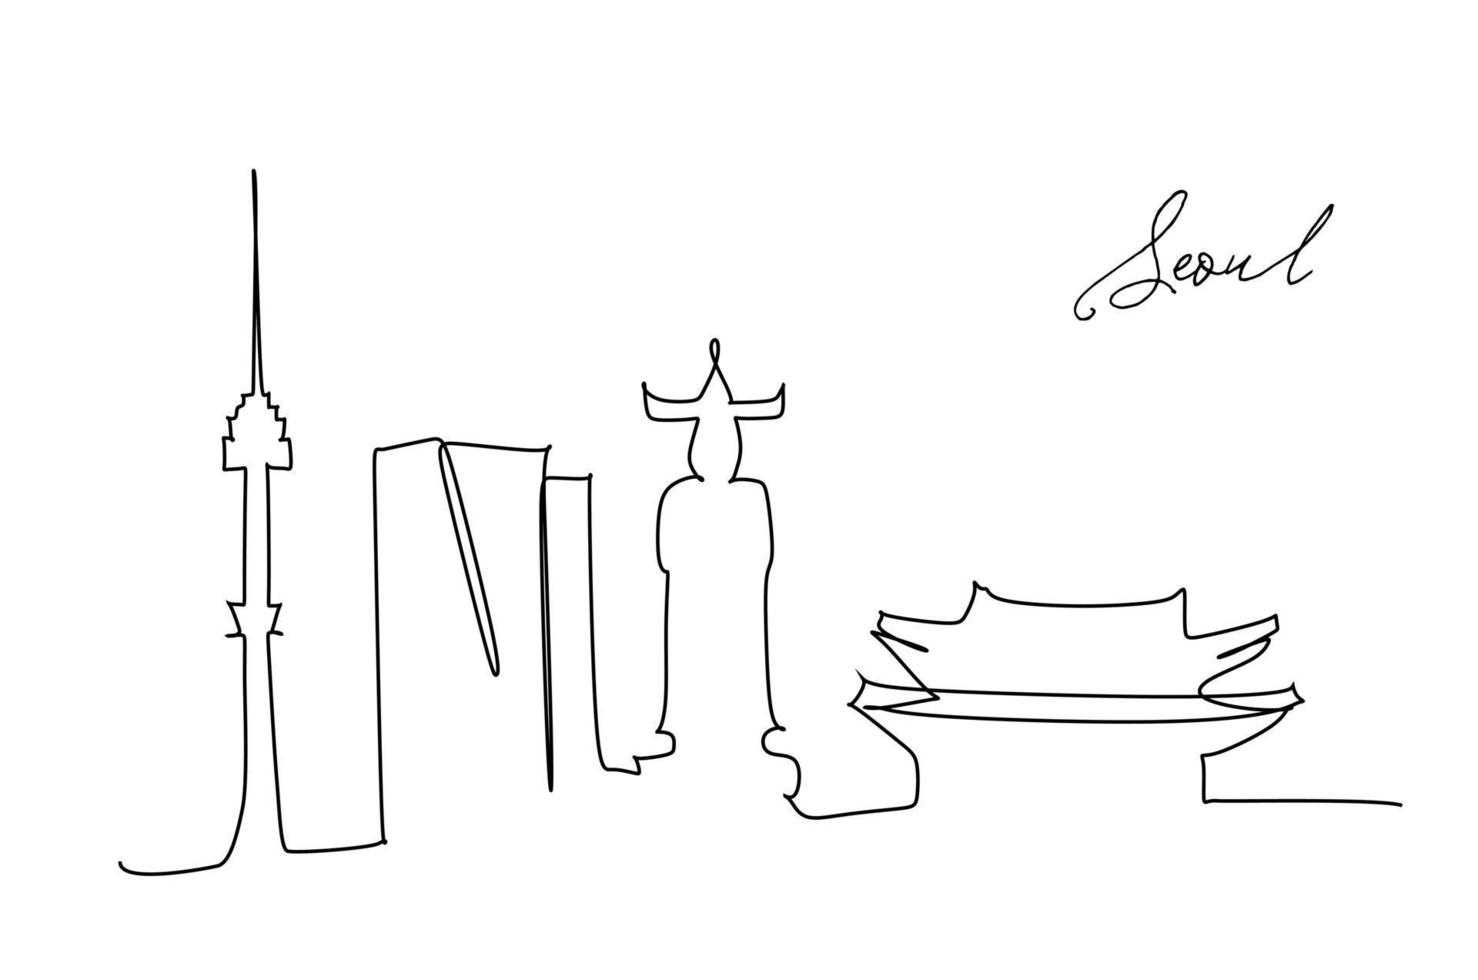 uma linha estilo seoul city skyline. vetor simples de estilo minimalista moderno. desenho de linha contínua